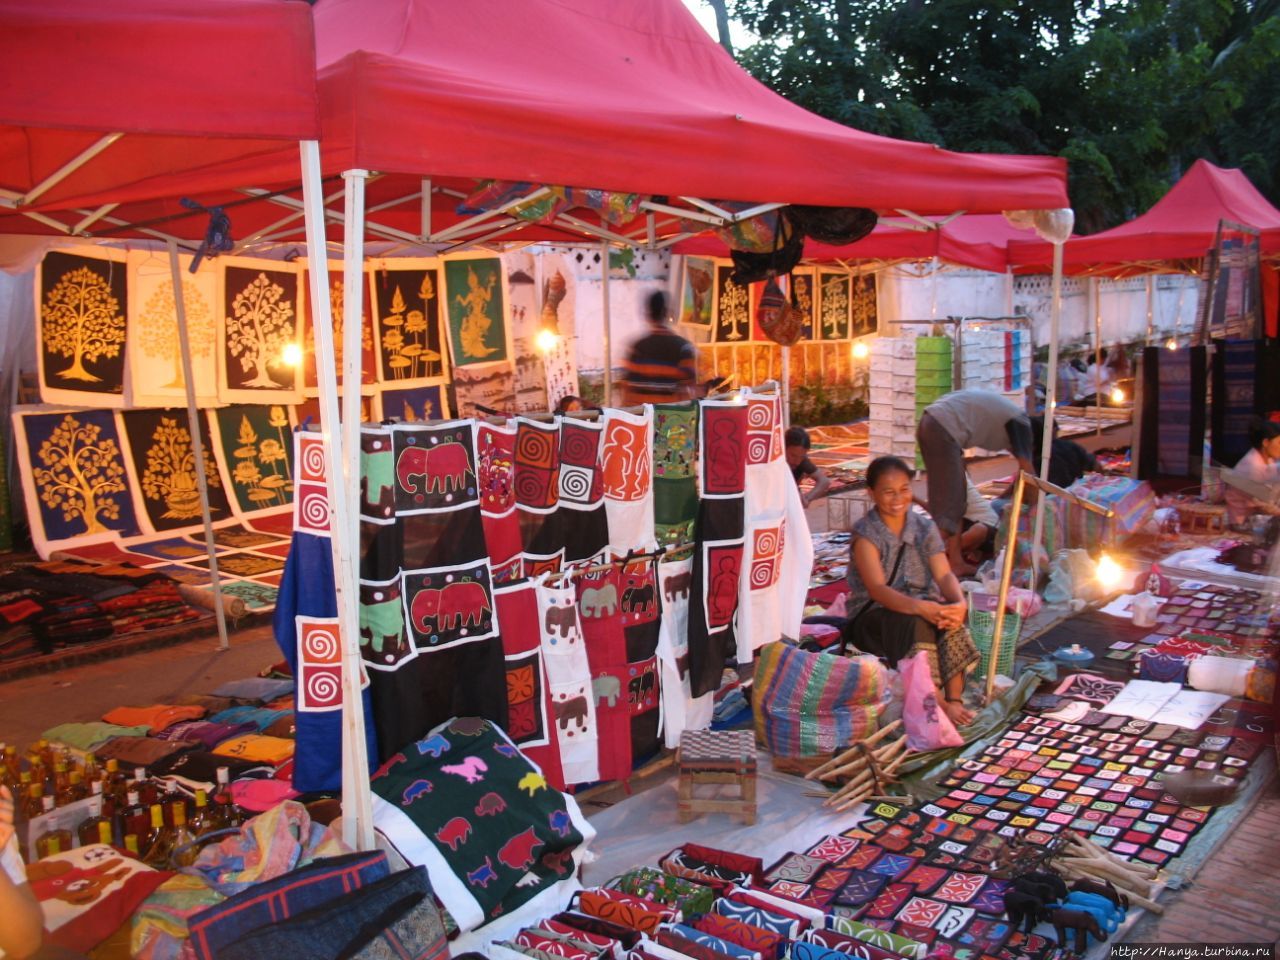 Ночной рынок в Луанг-Прабанге Луанг-Прабанг, Лаос